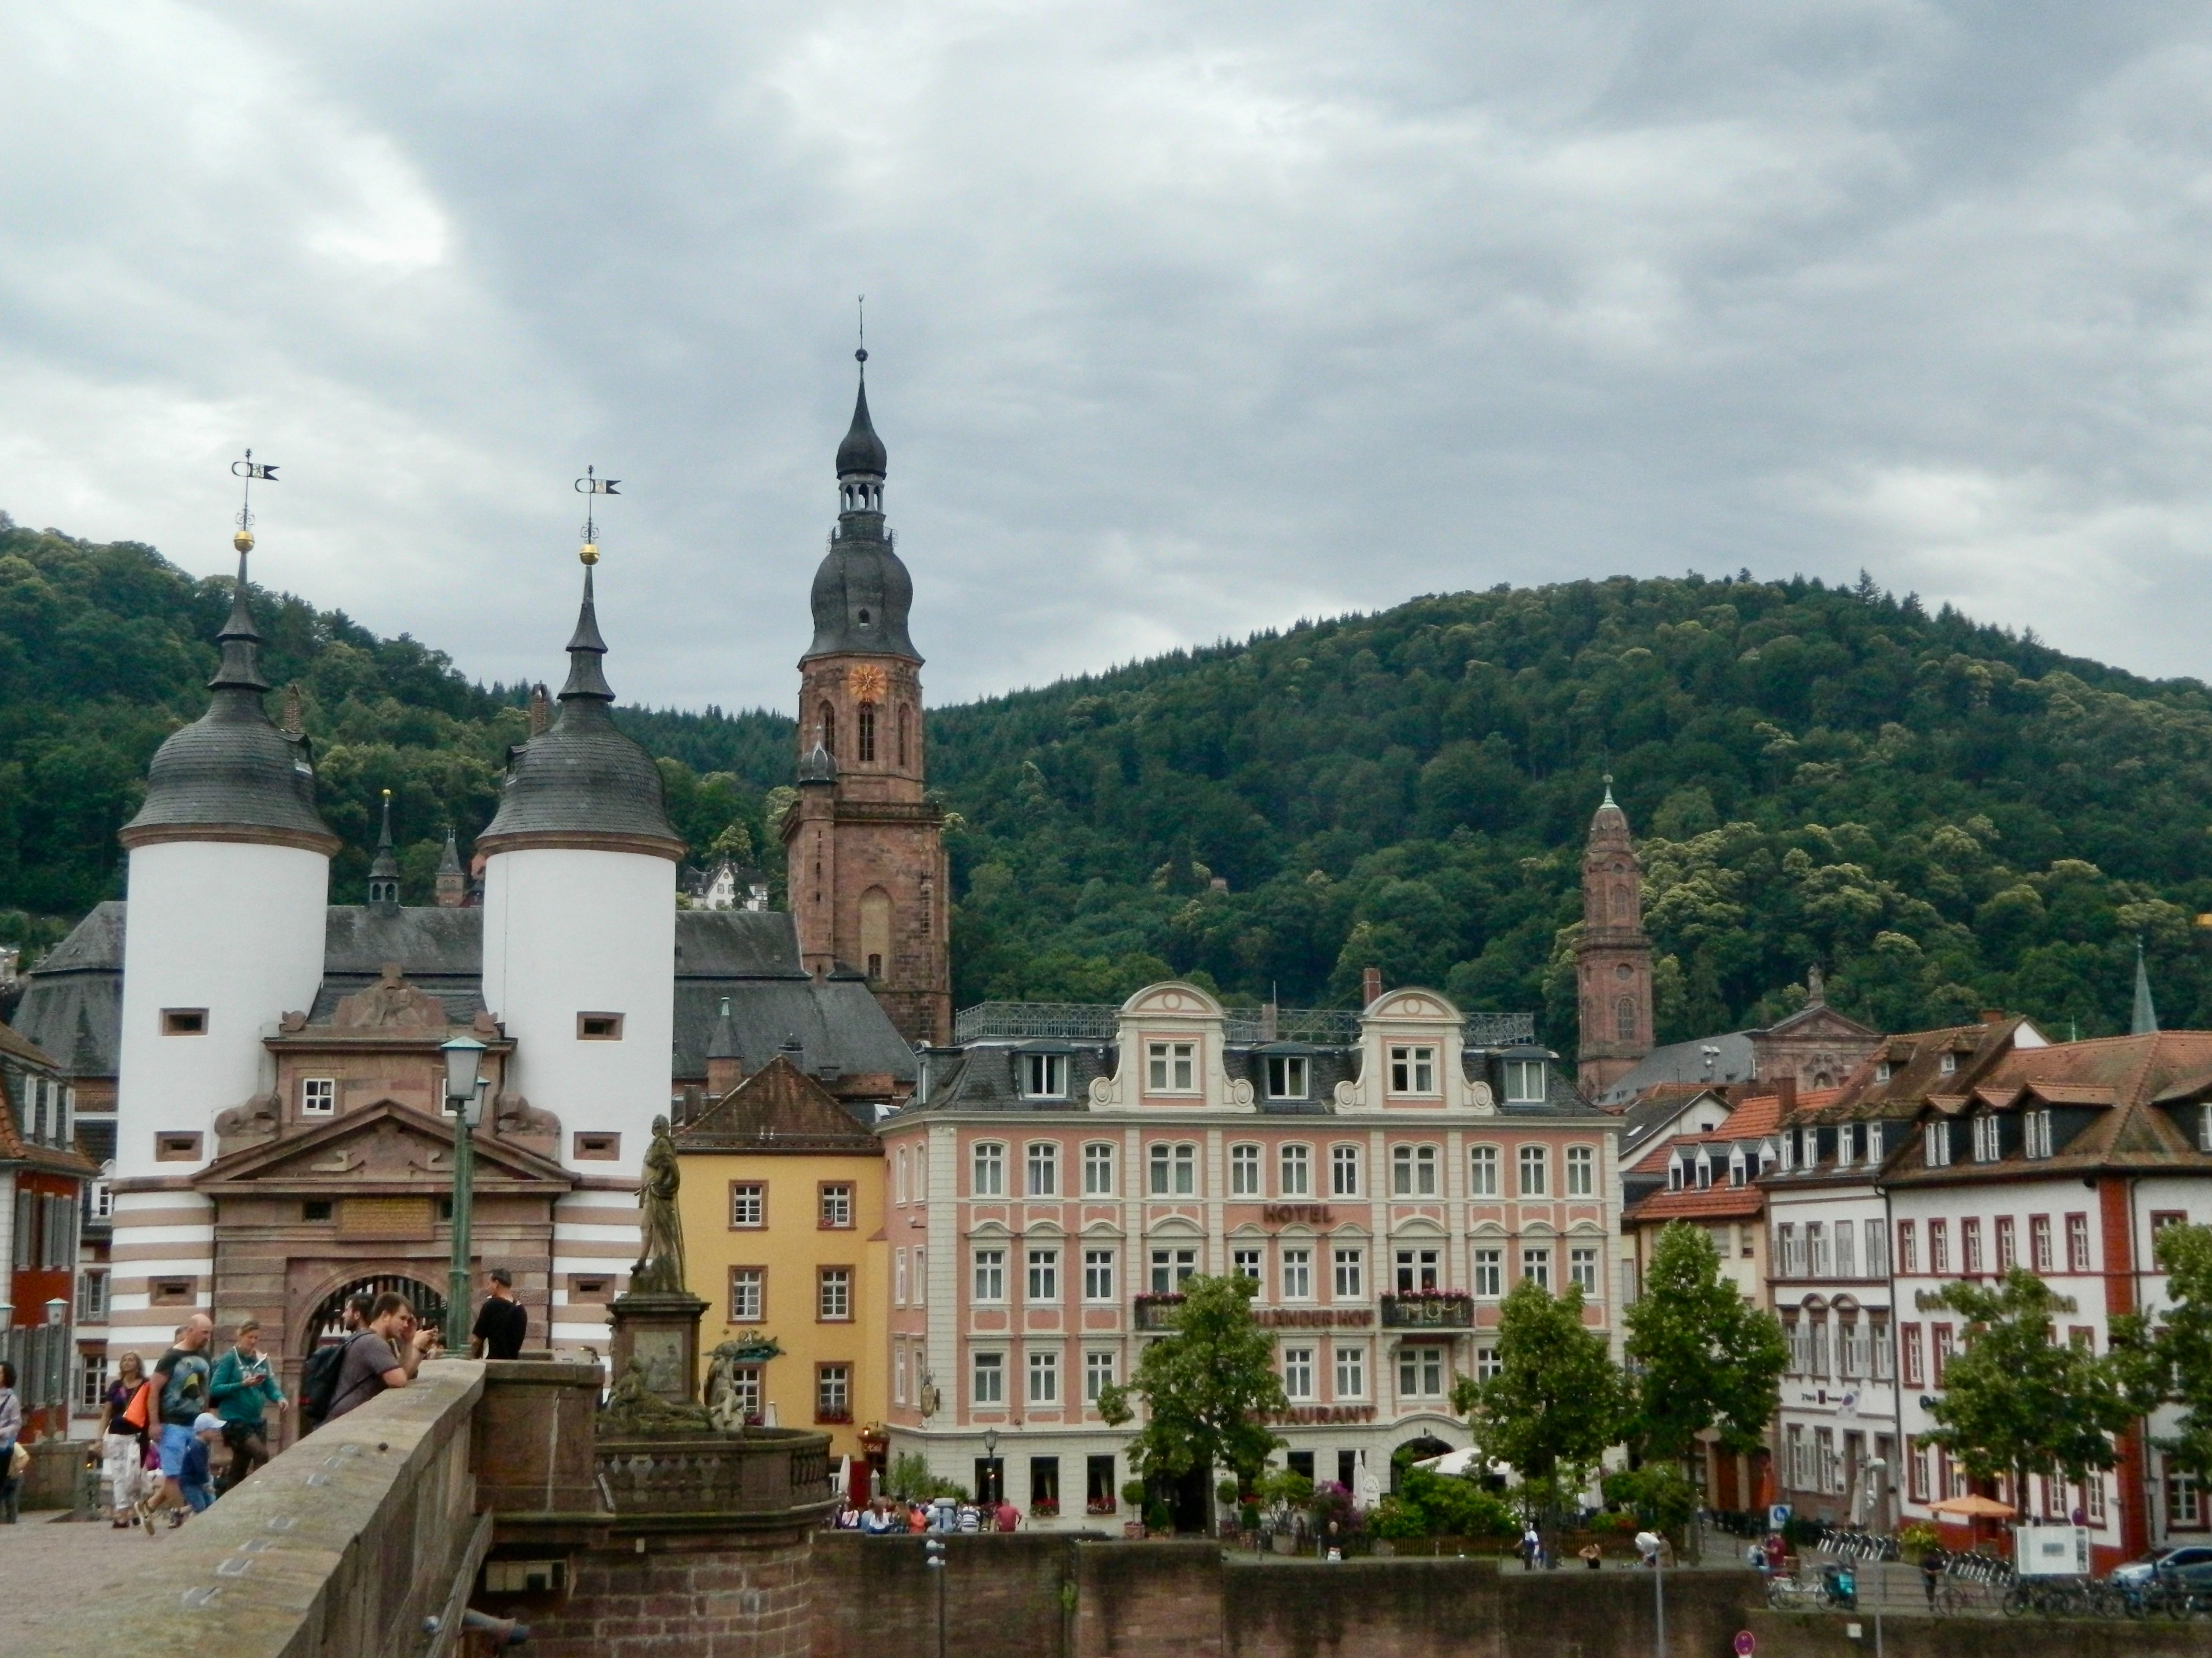 Heidelberg University in Heidelberg, Germany